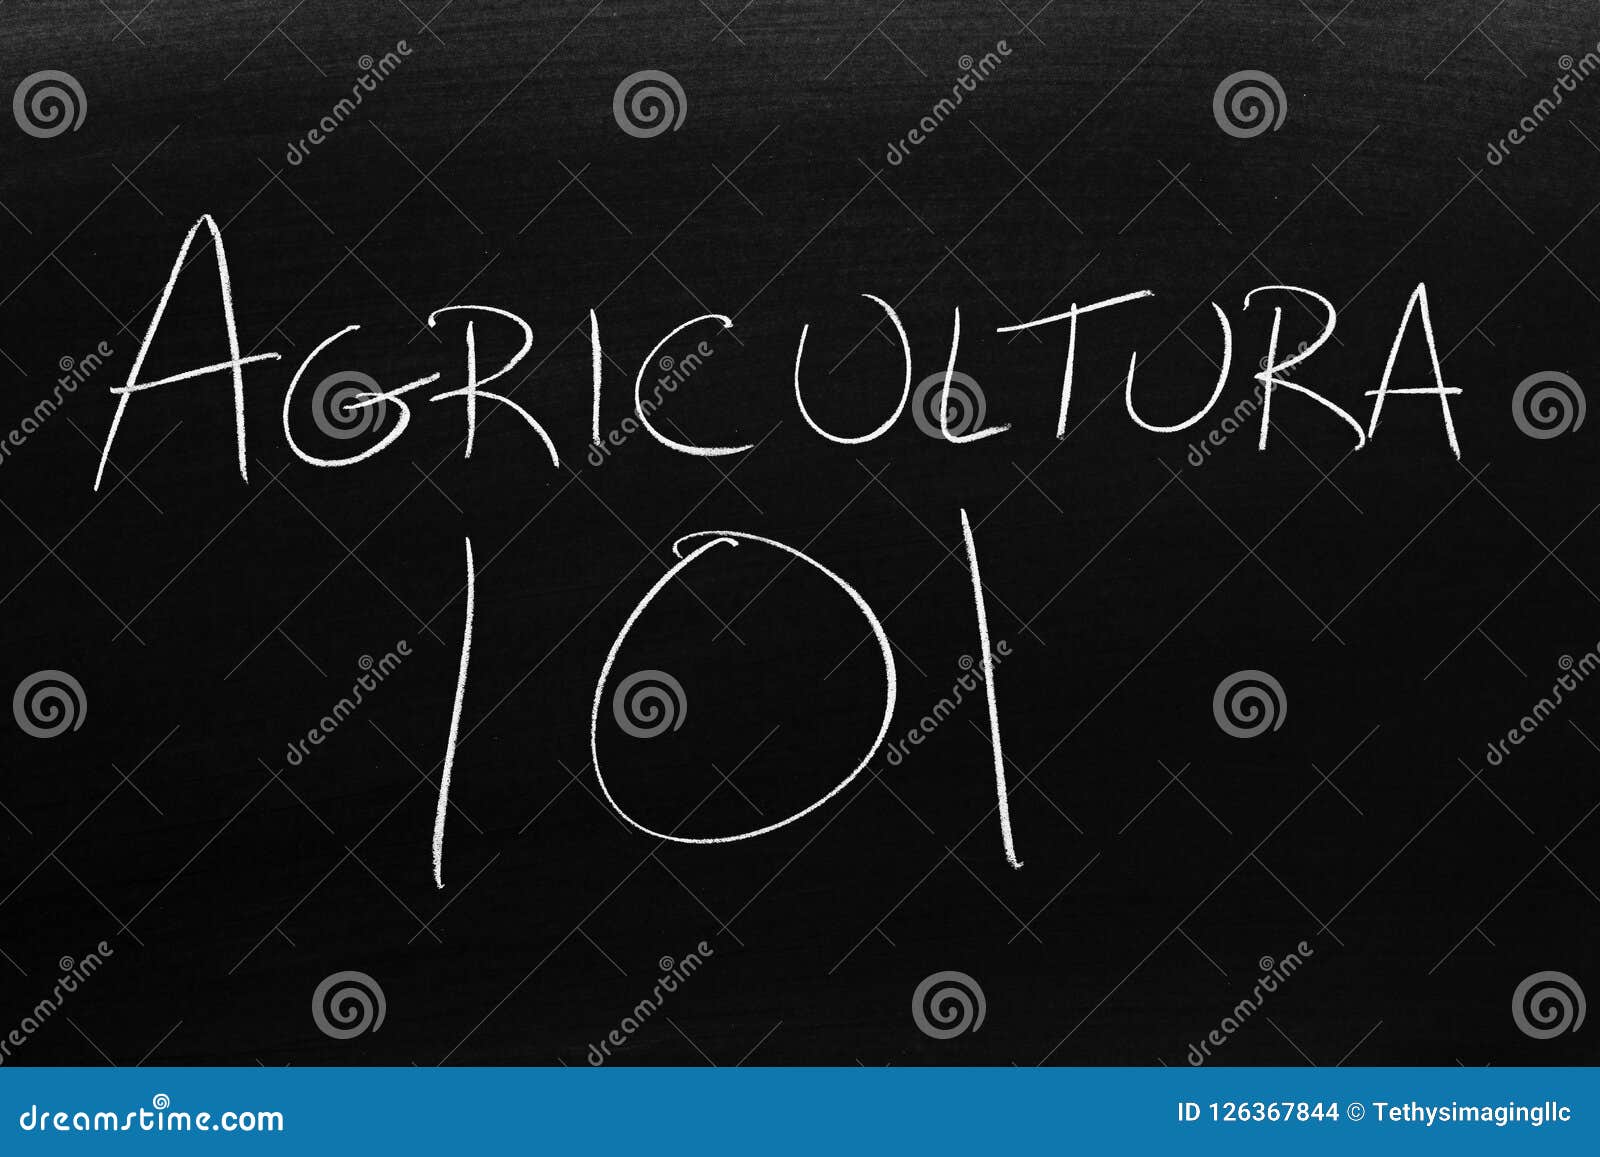 agricultura 101 on a blackboard.  translation: farming 101